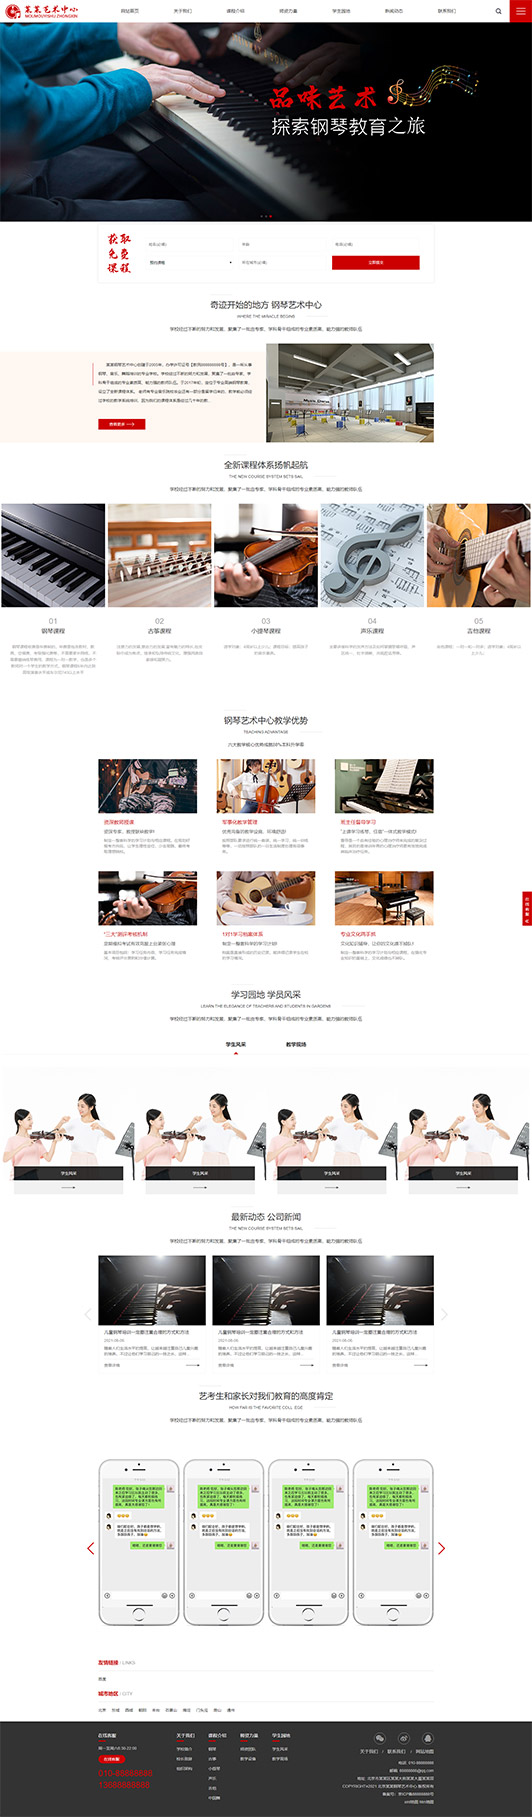 玉树钢琴艺术培训公司响应式企业网站